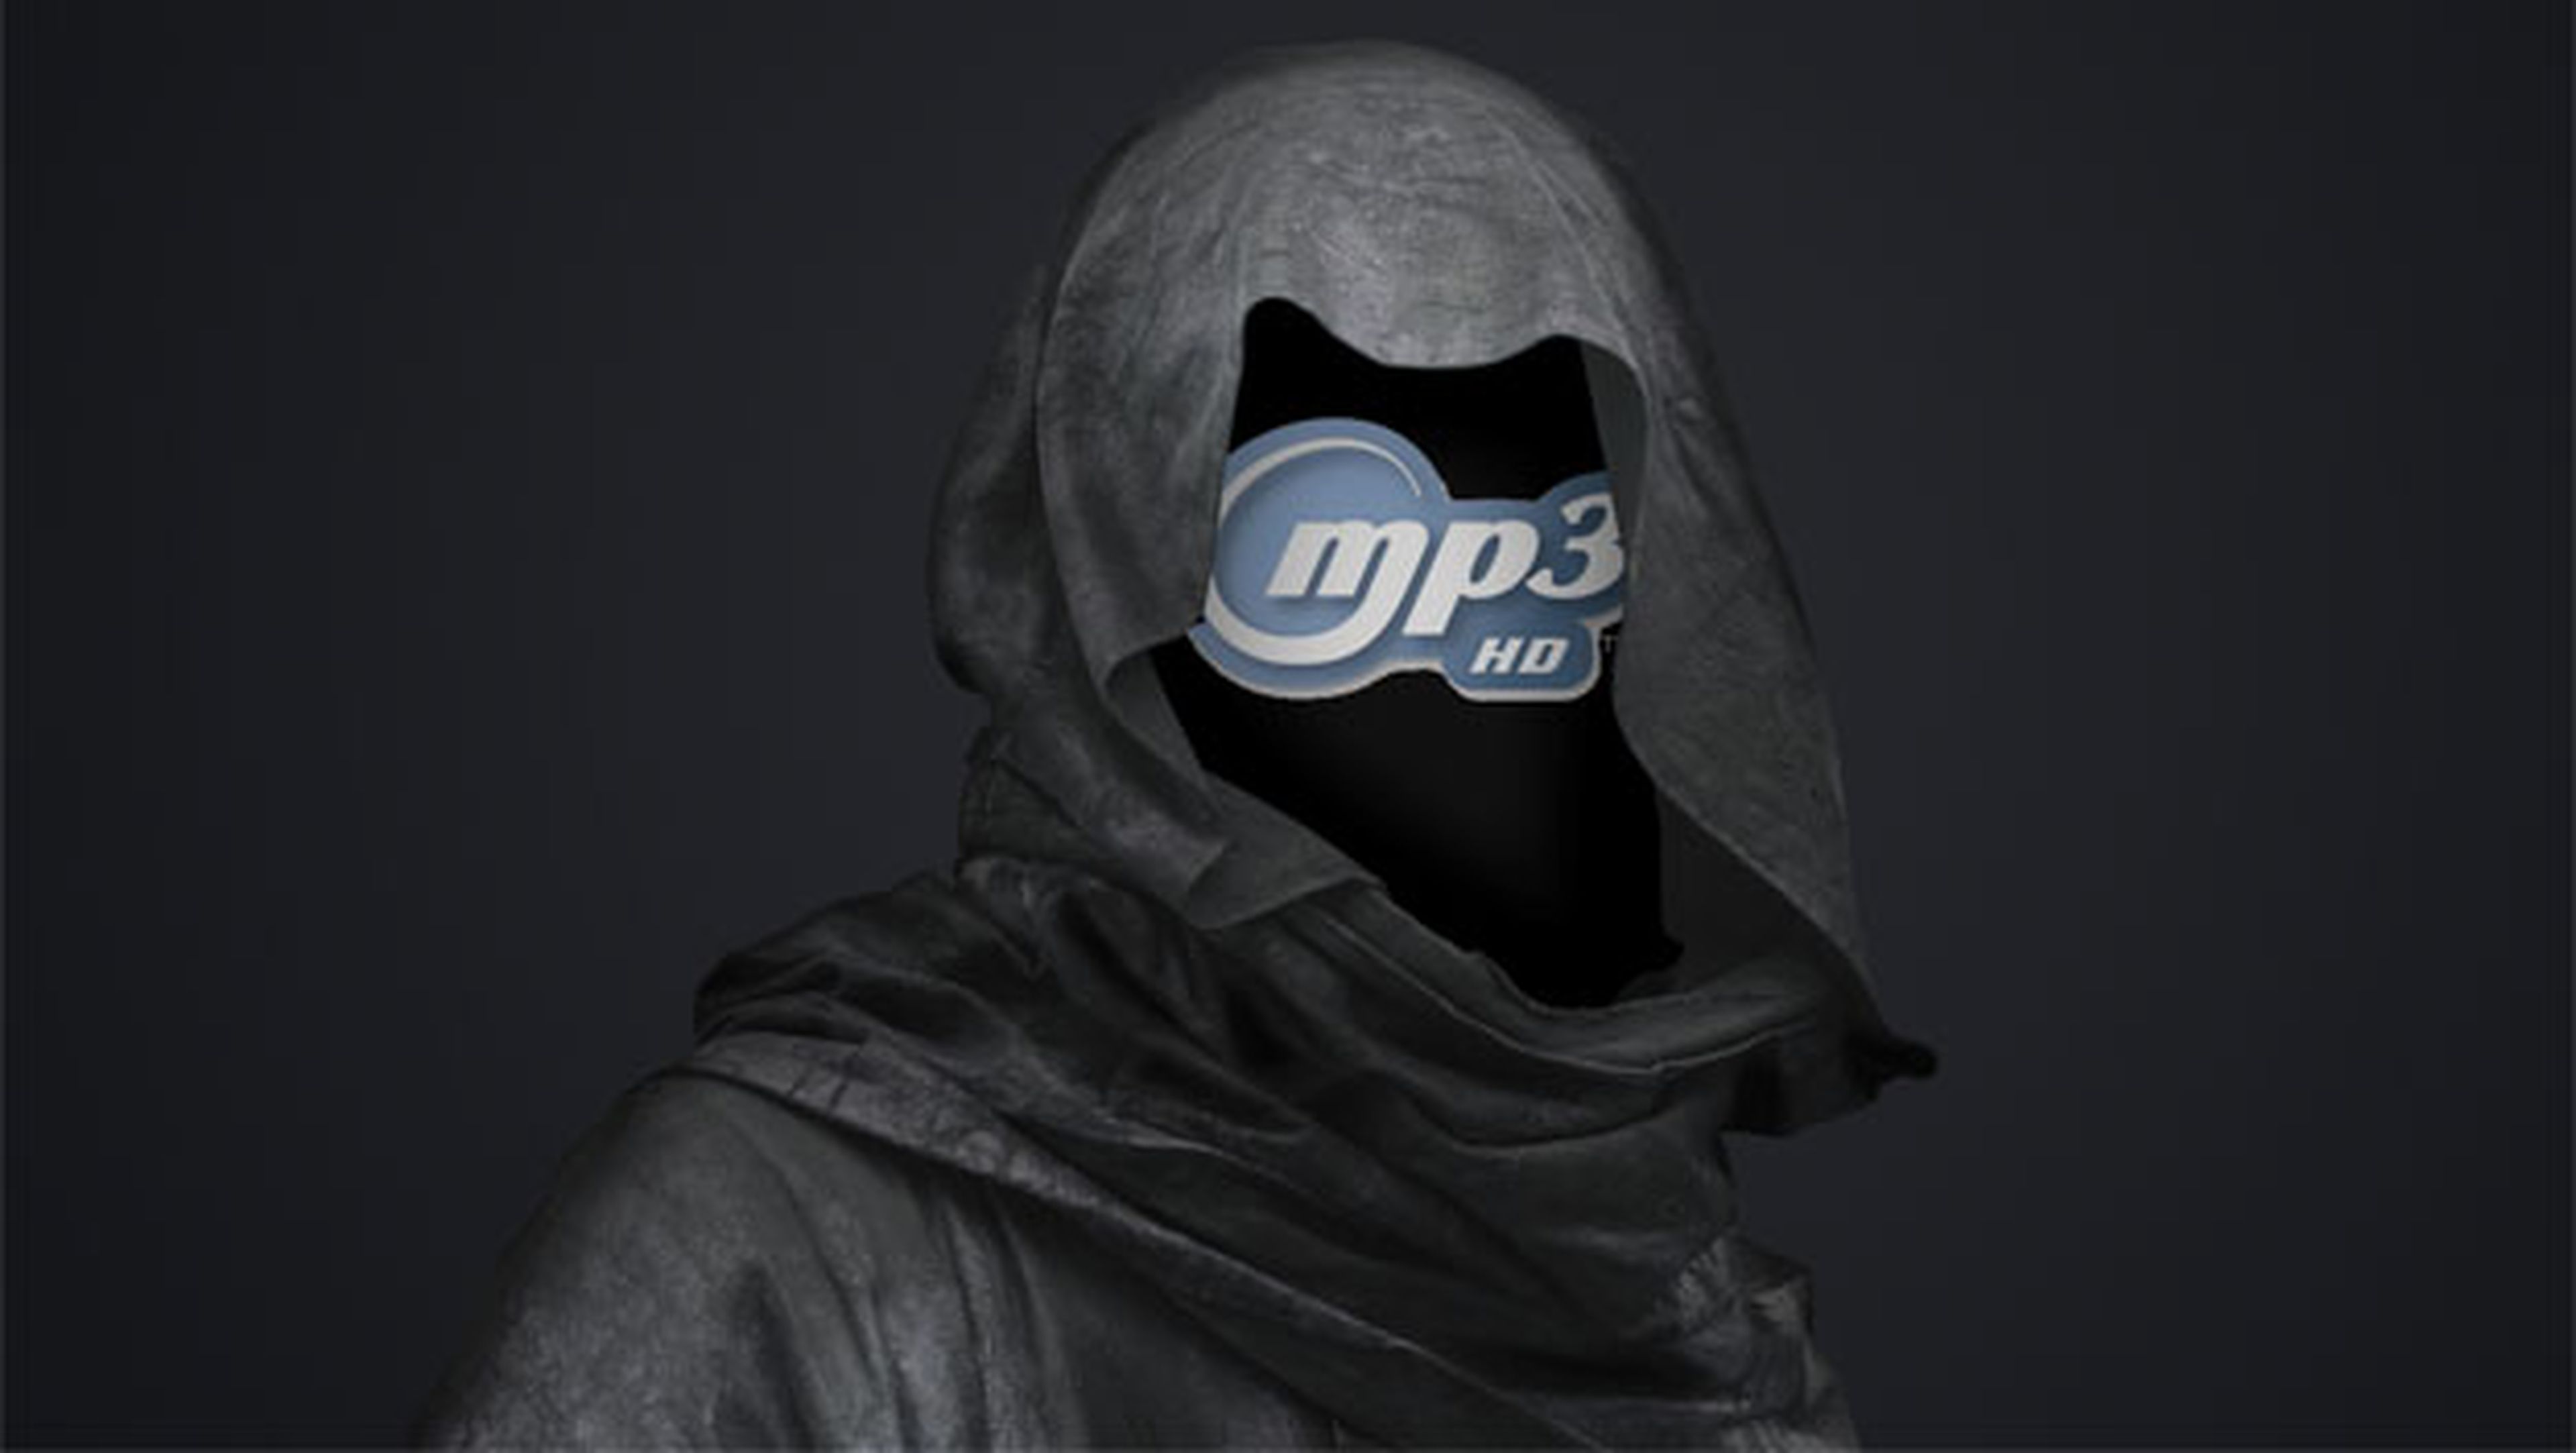 ¿Quién quiere matar al MP3?